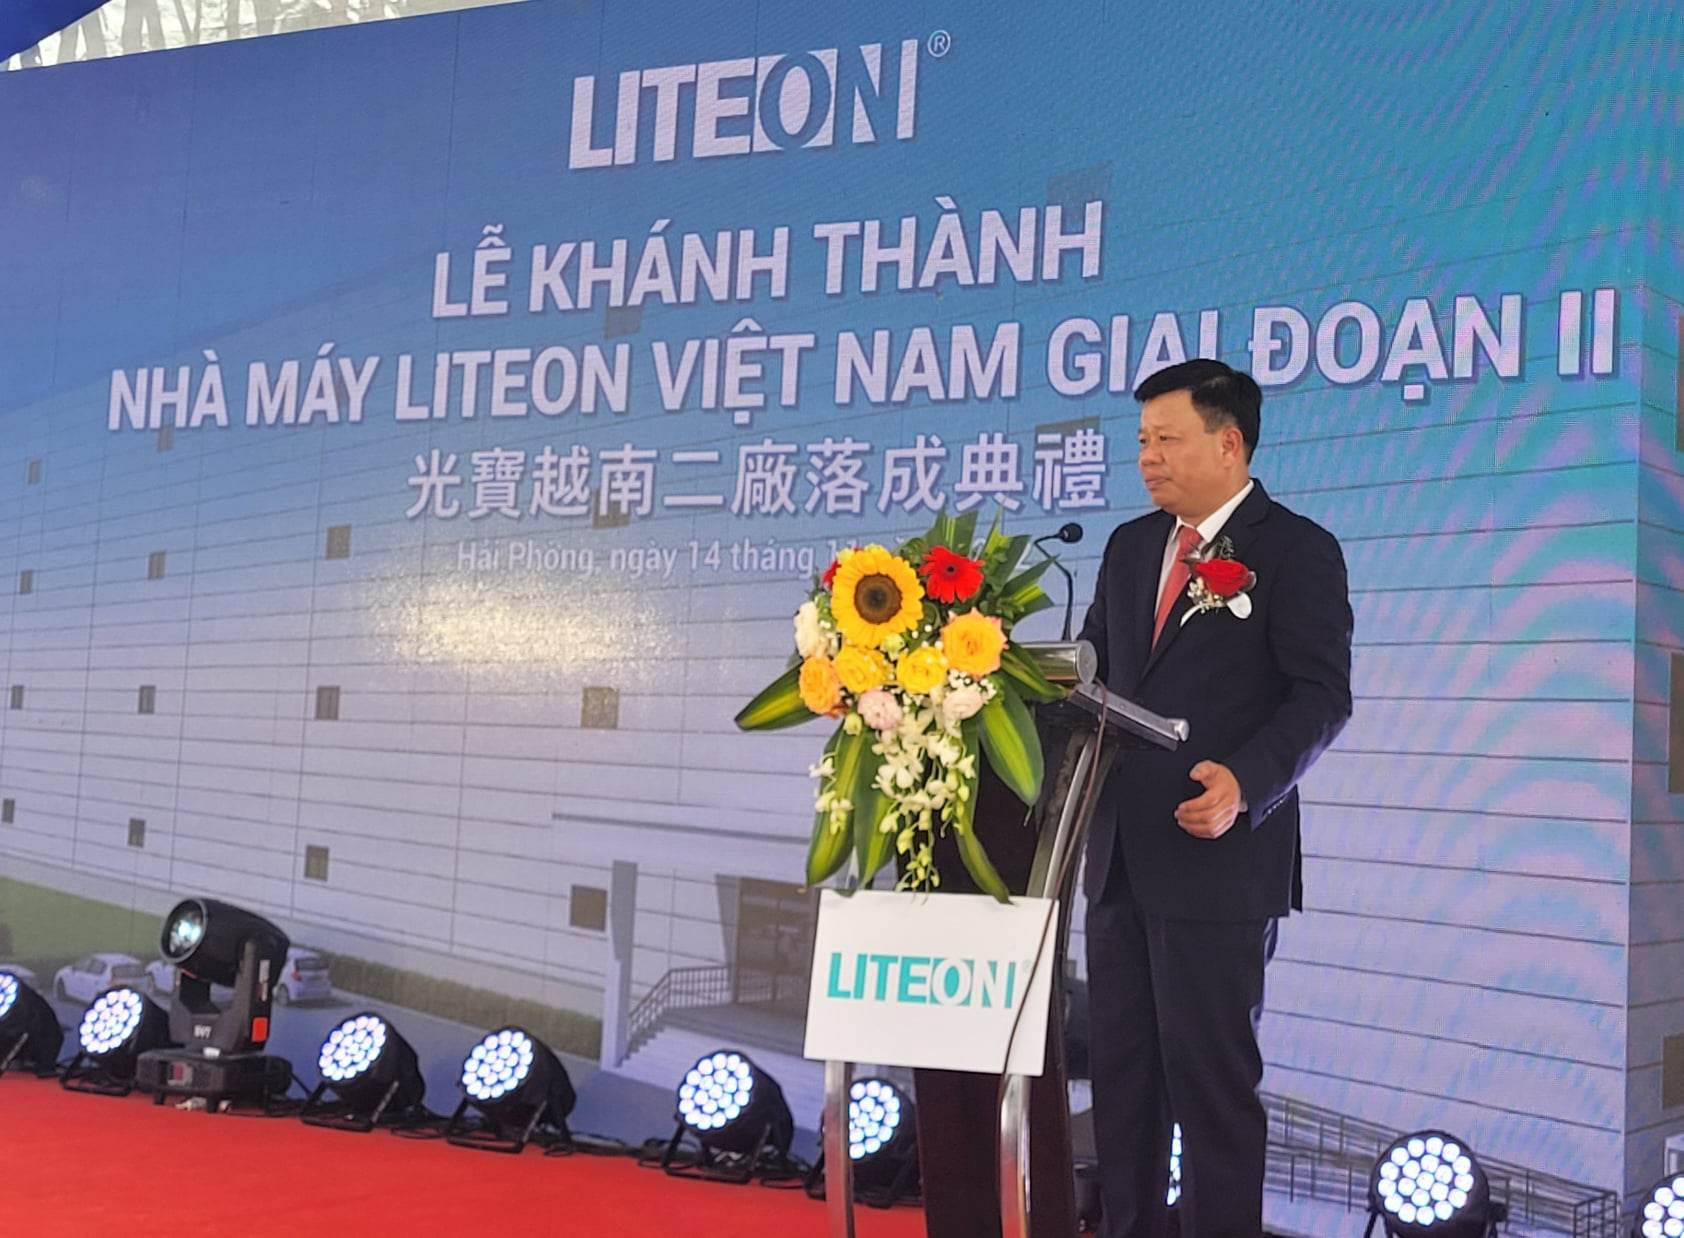 นาย Le Trung Kien หัวหน้าคณะกรรมการบริหารเขตเศรษฐกิจ Hai Phong กล่าวในพิธีเปิด  ภาพถ่าย: “Thanh Son .”